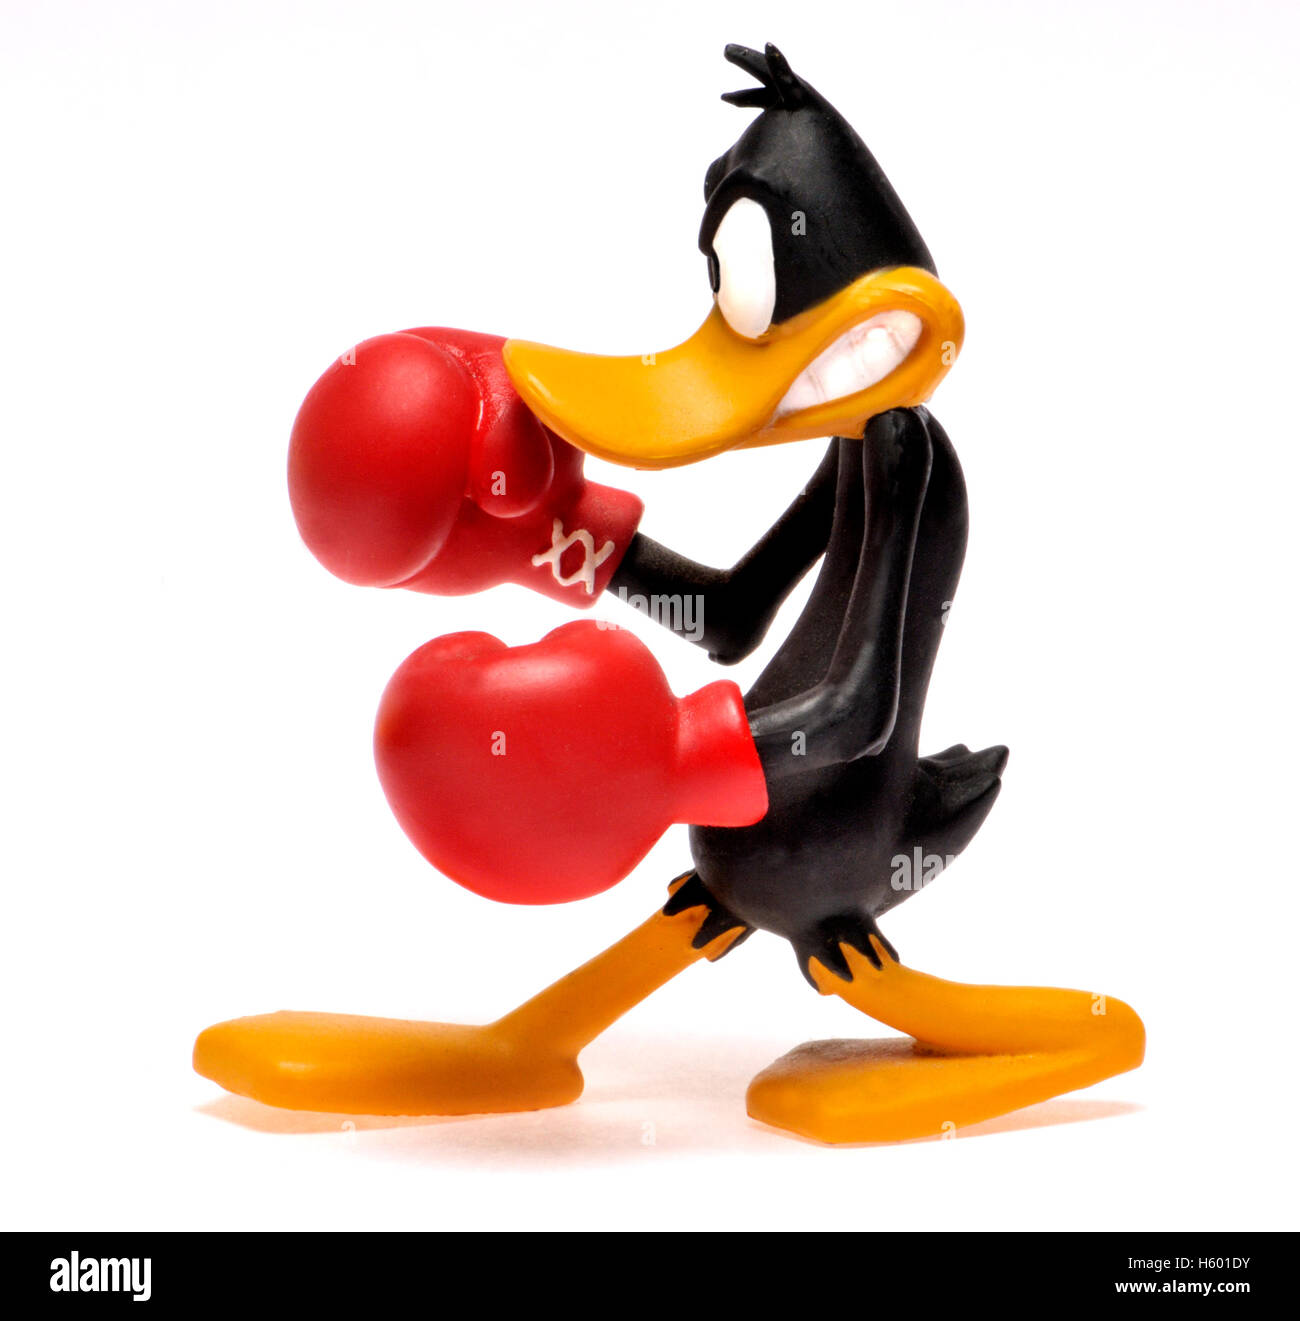 Personaggio dei fumetti - figurine di Daffy Duck boxe Foto Stock